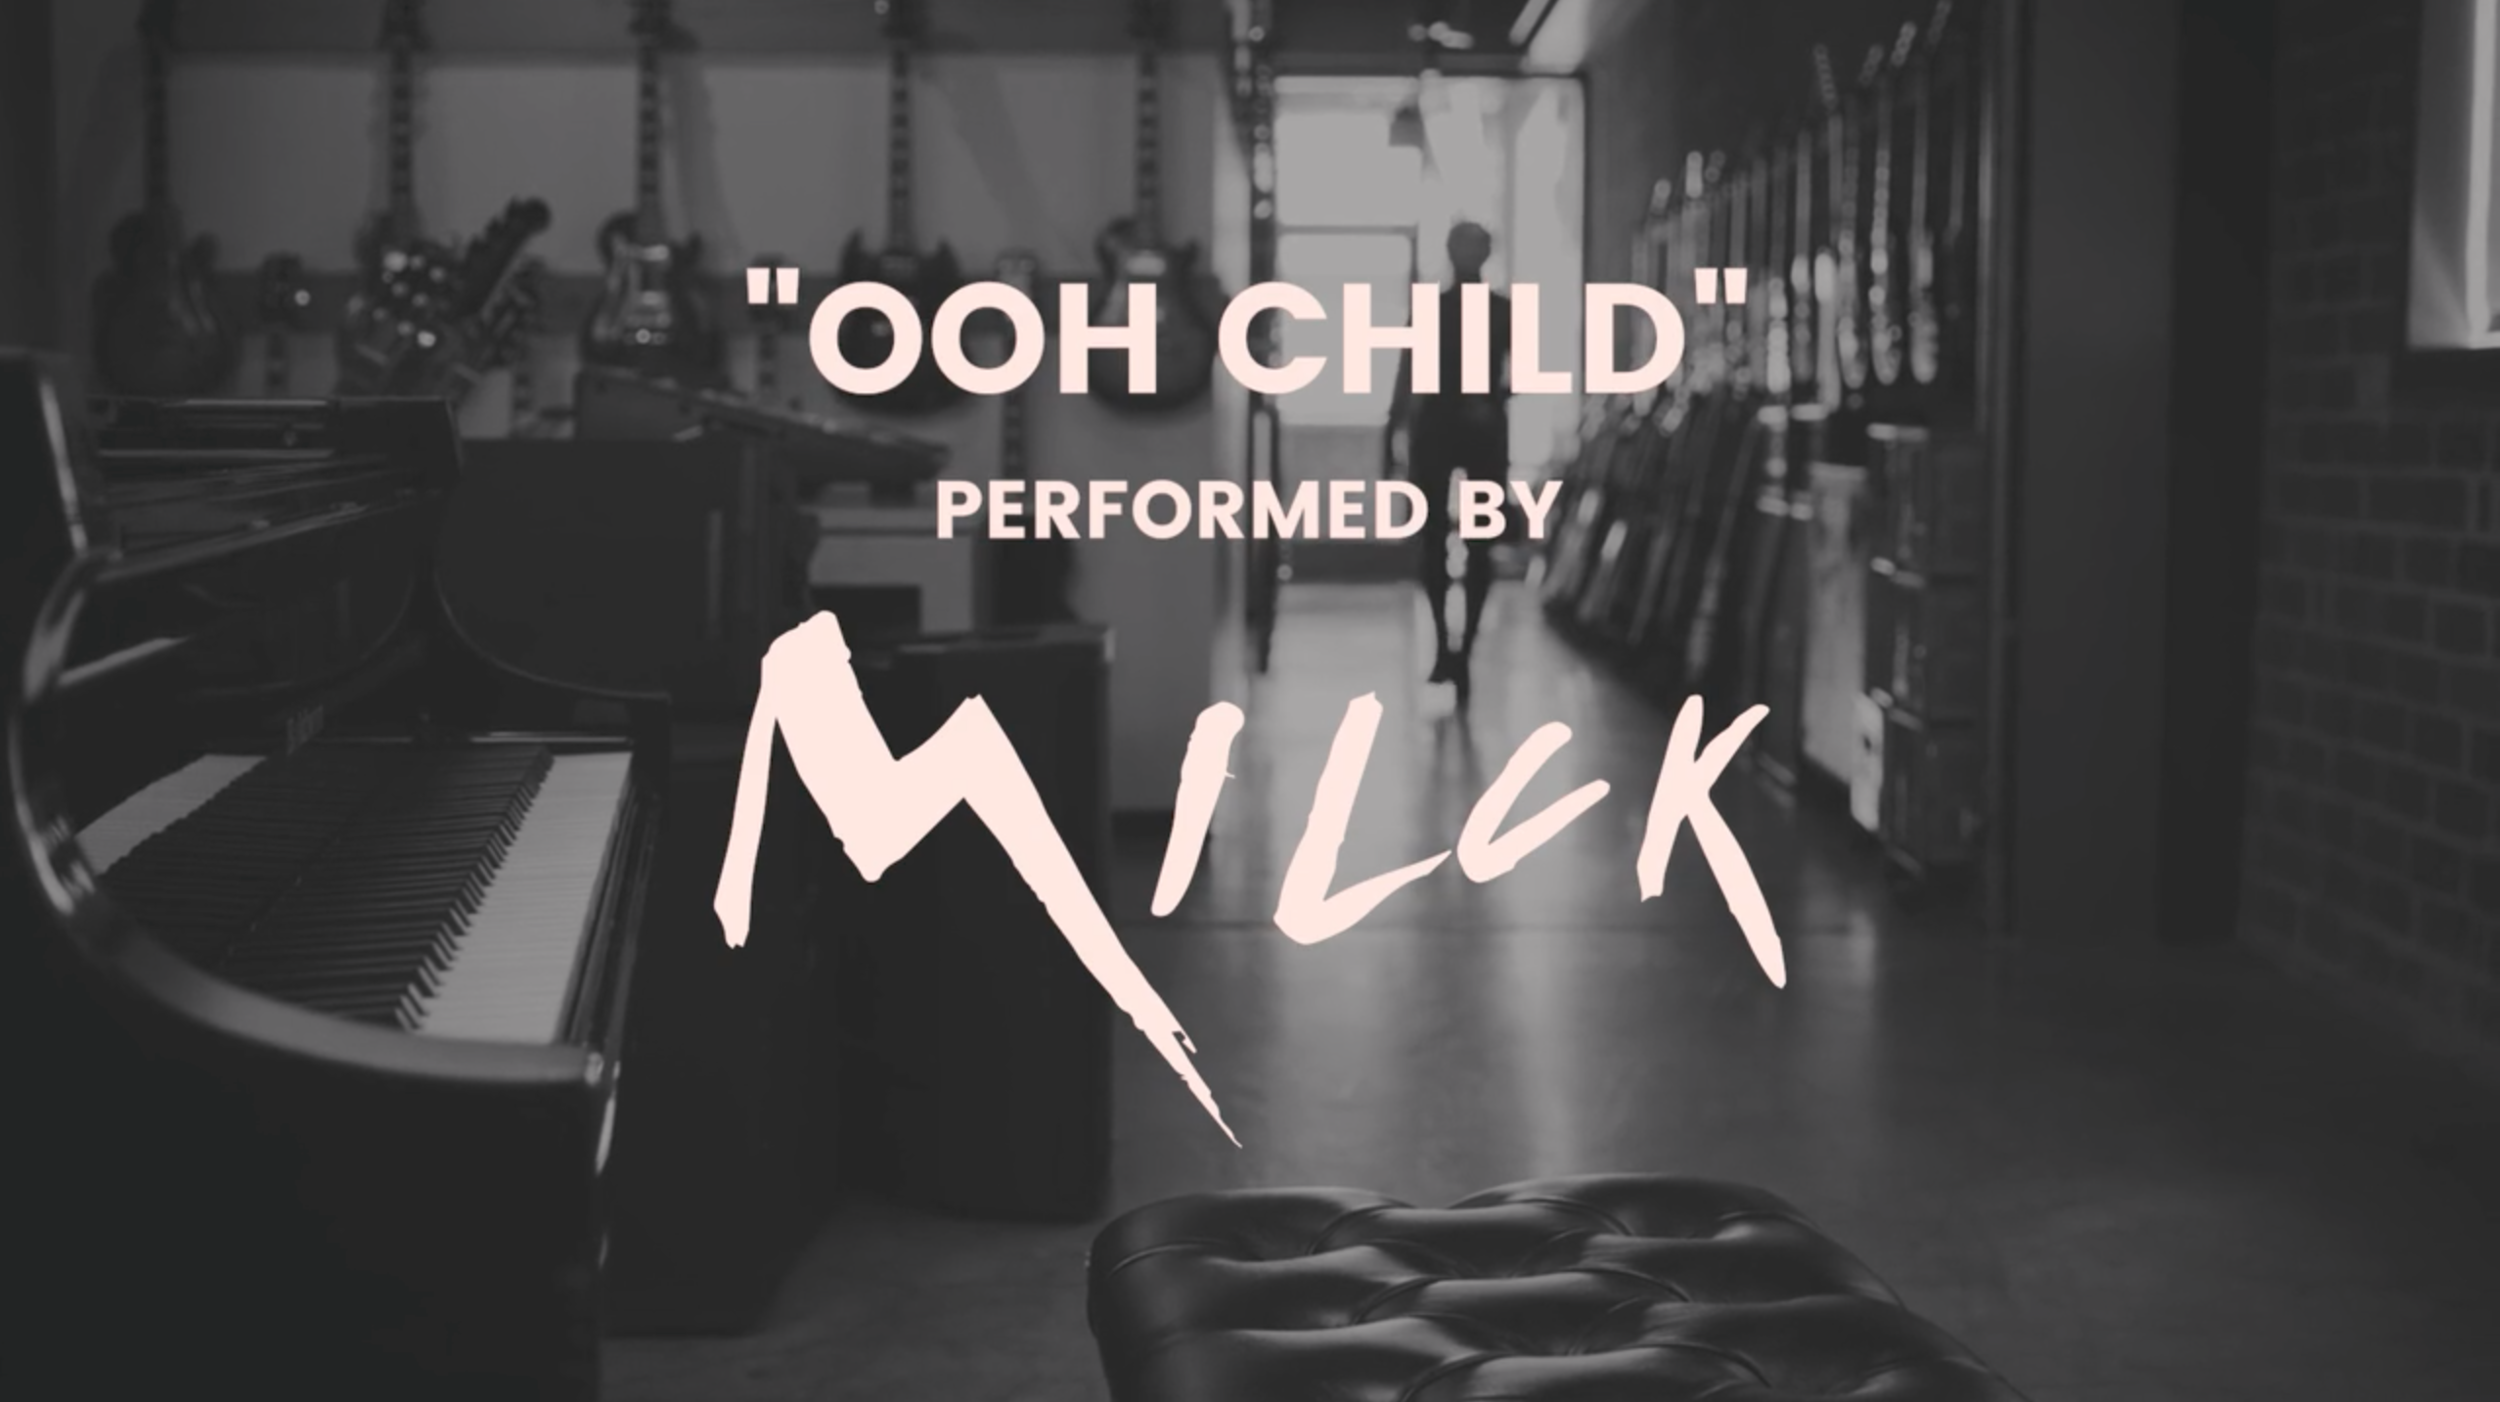 MILCK | Ooh Child